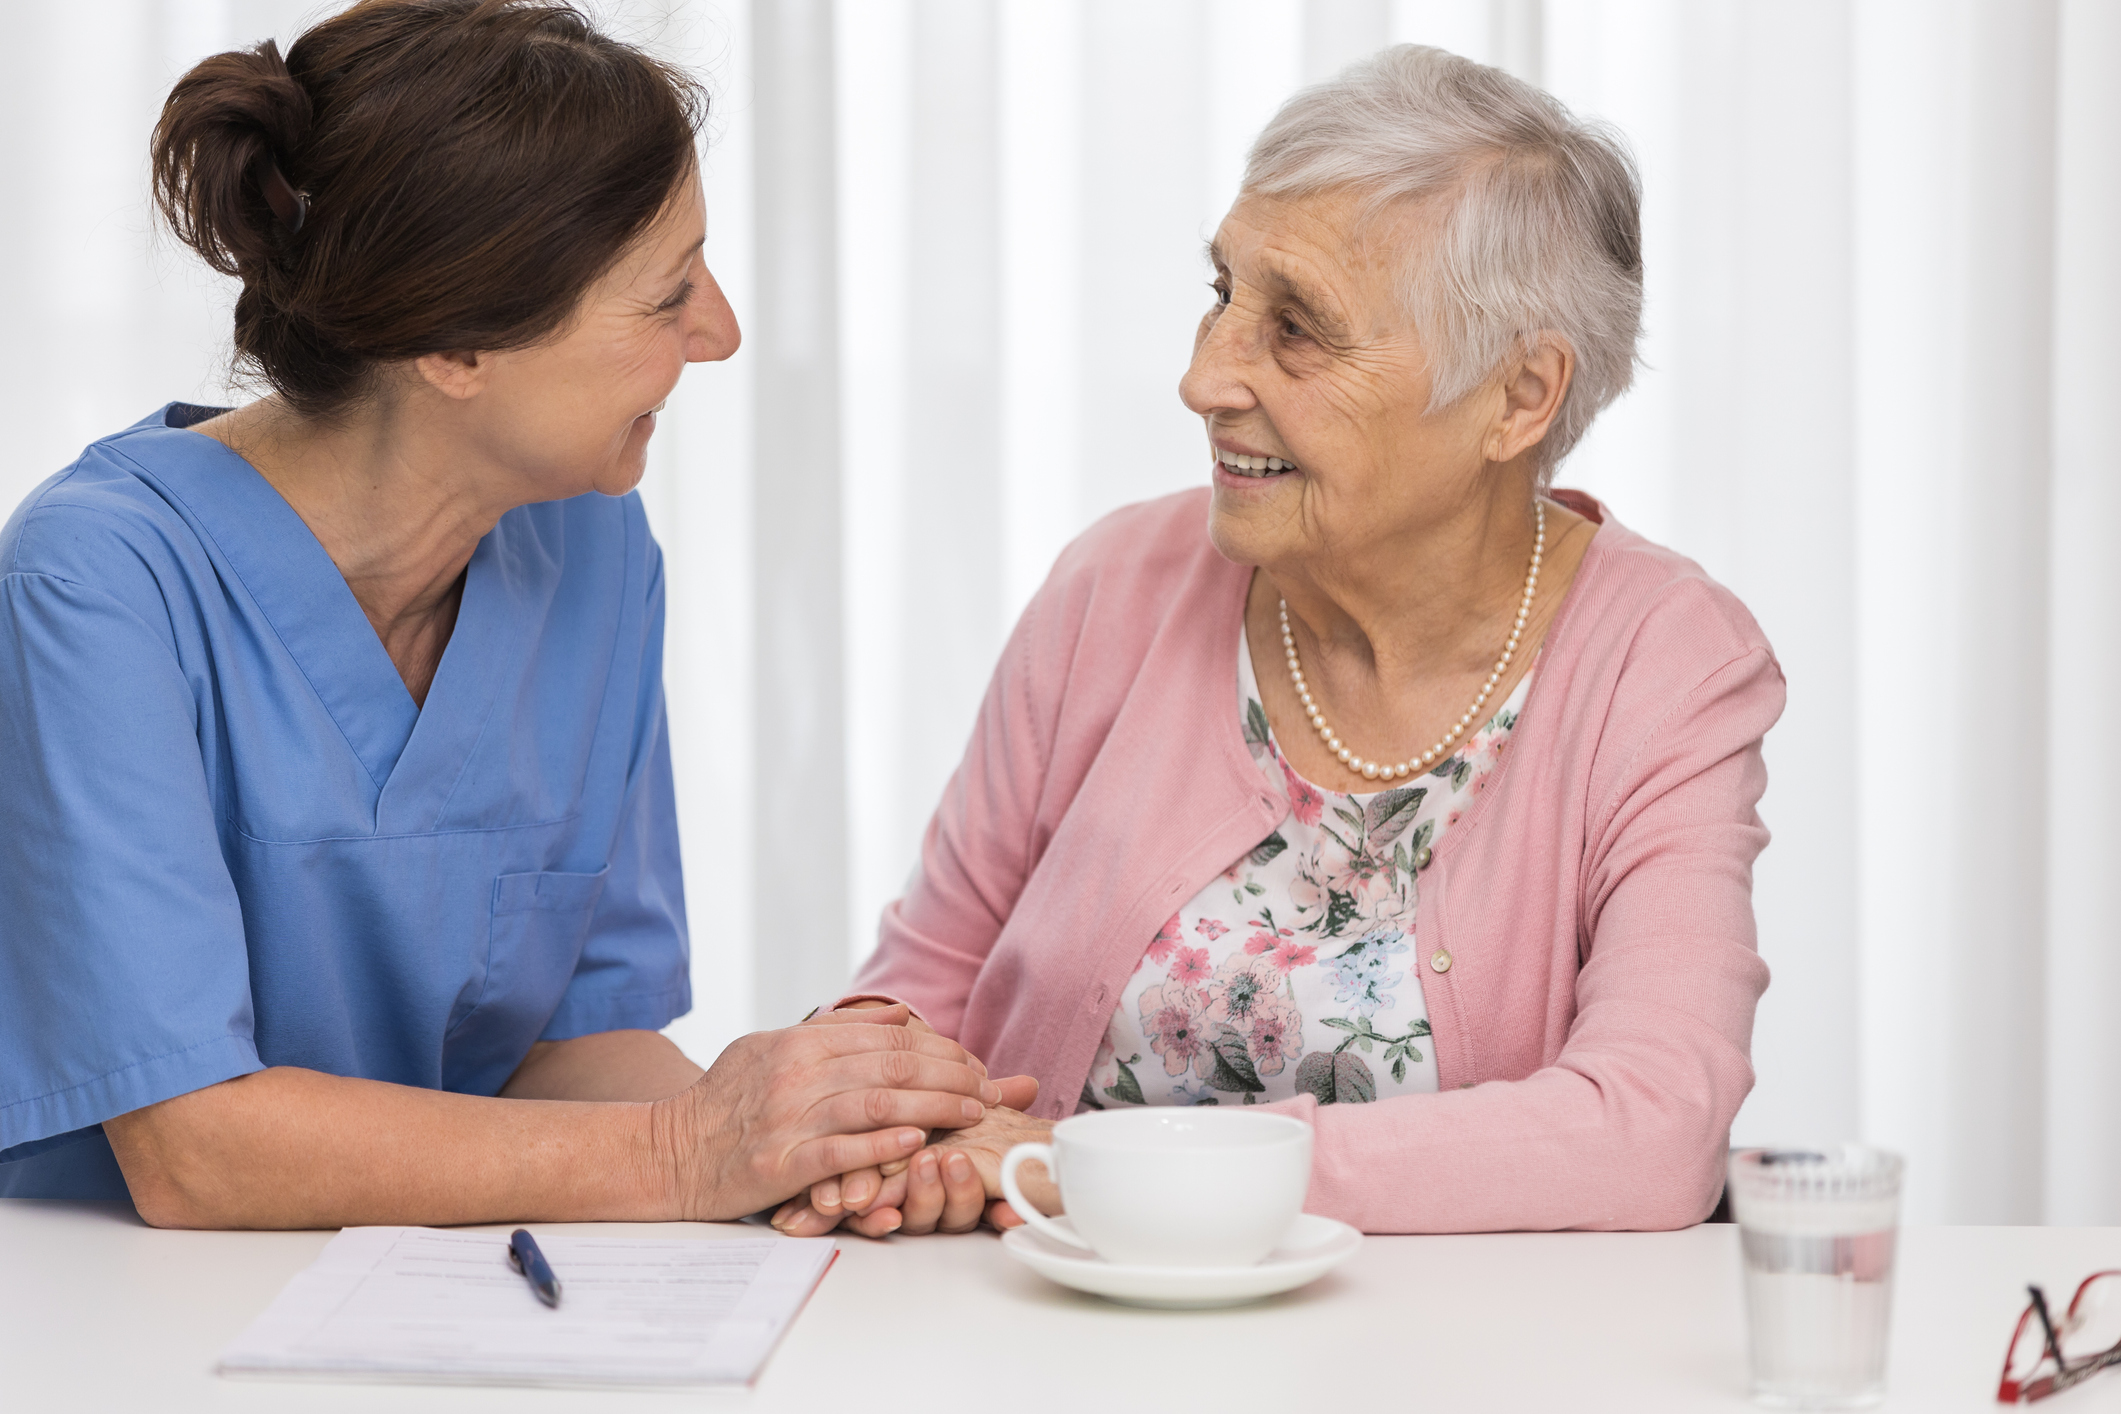 Eine Pflegekraft hält die Hand einer Seniorin und sie scheinen sich freundlich zu unterhalten. Das Bild steht sinnbildlich für den Zeitgewinn, den Pflegedienste durch die Zusammenarbeit mit hellomed erwarten können.